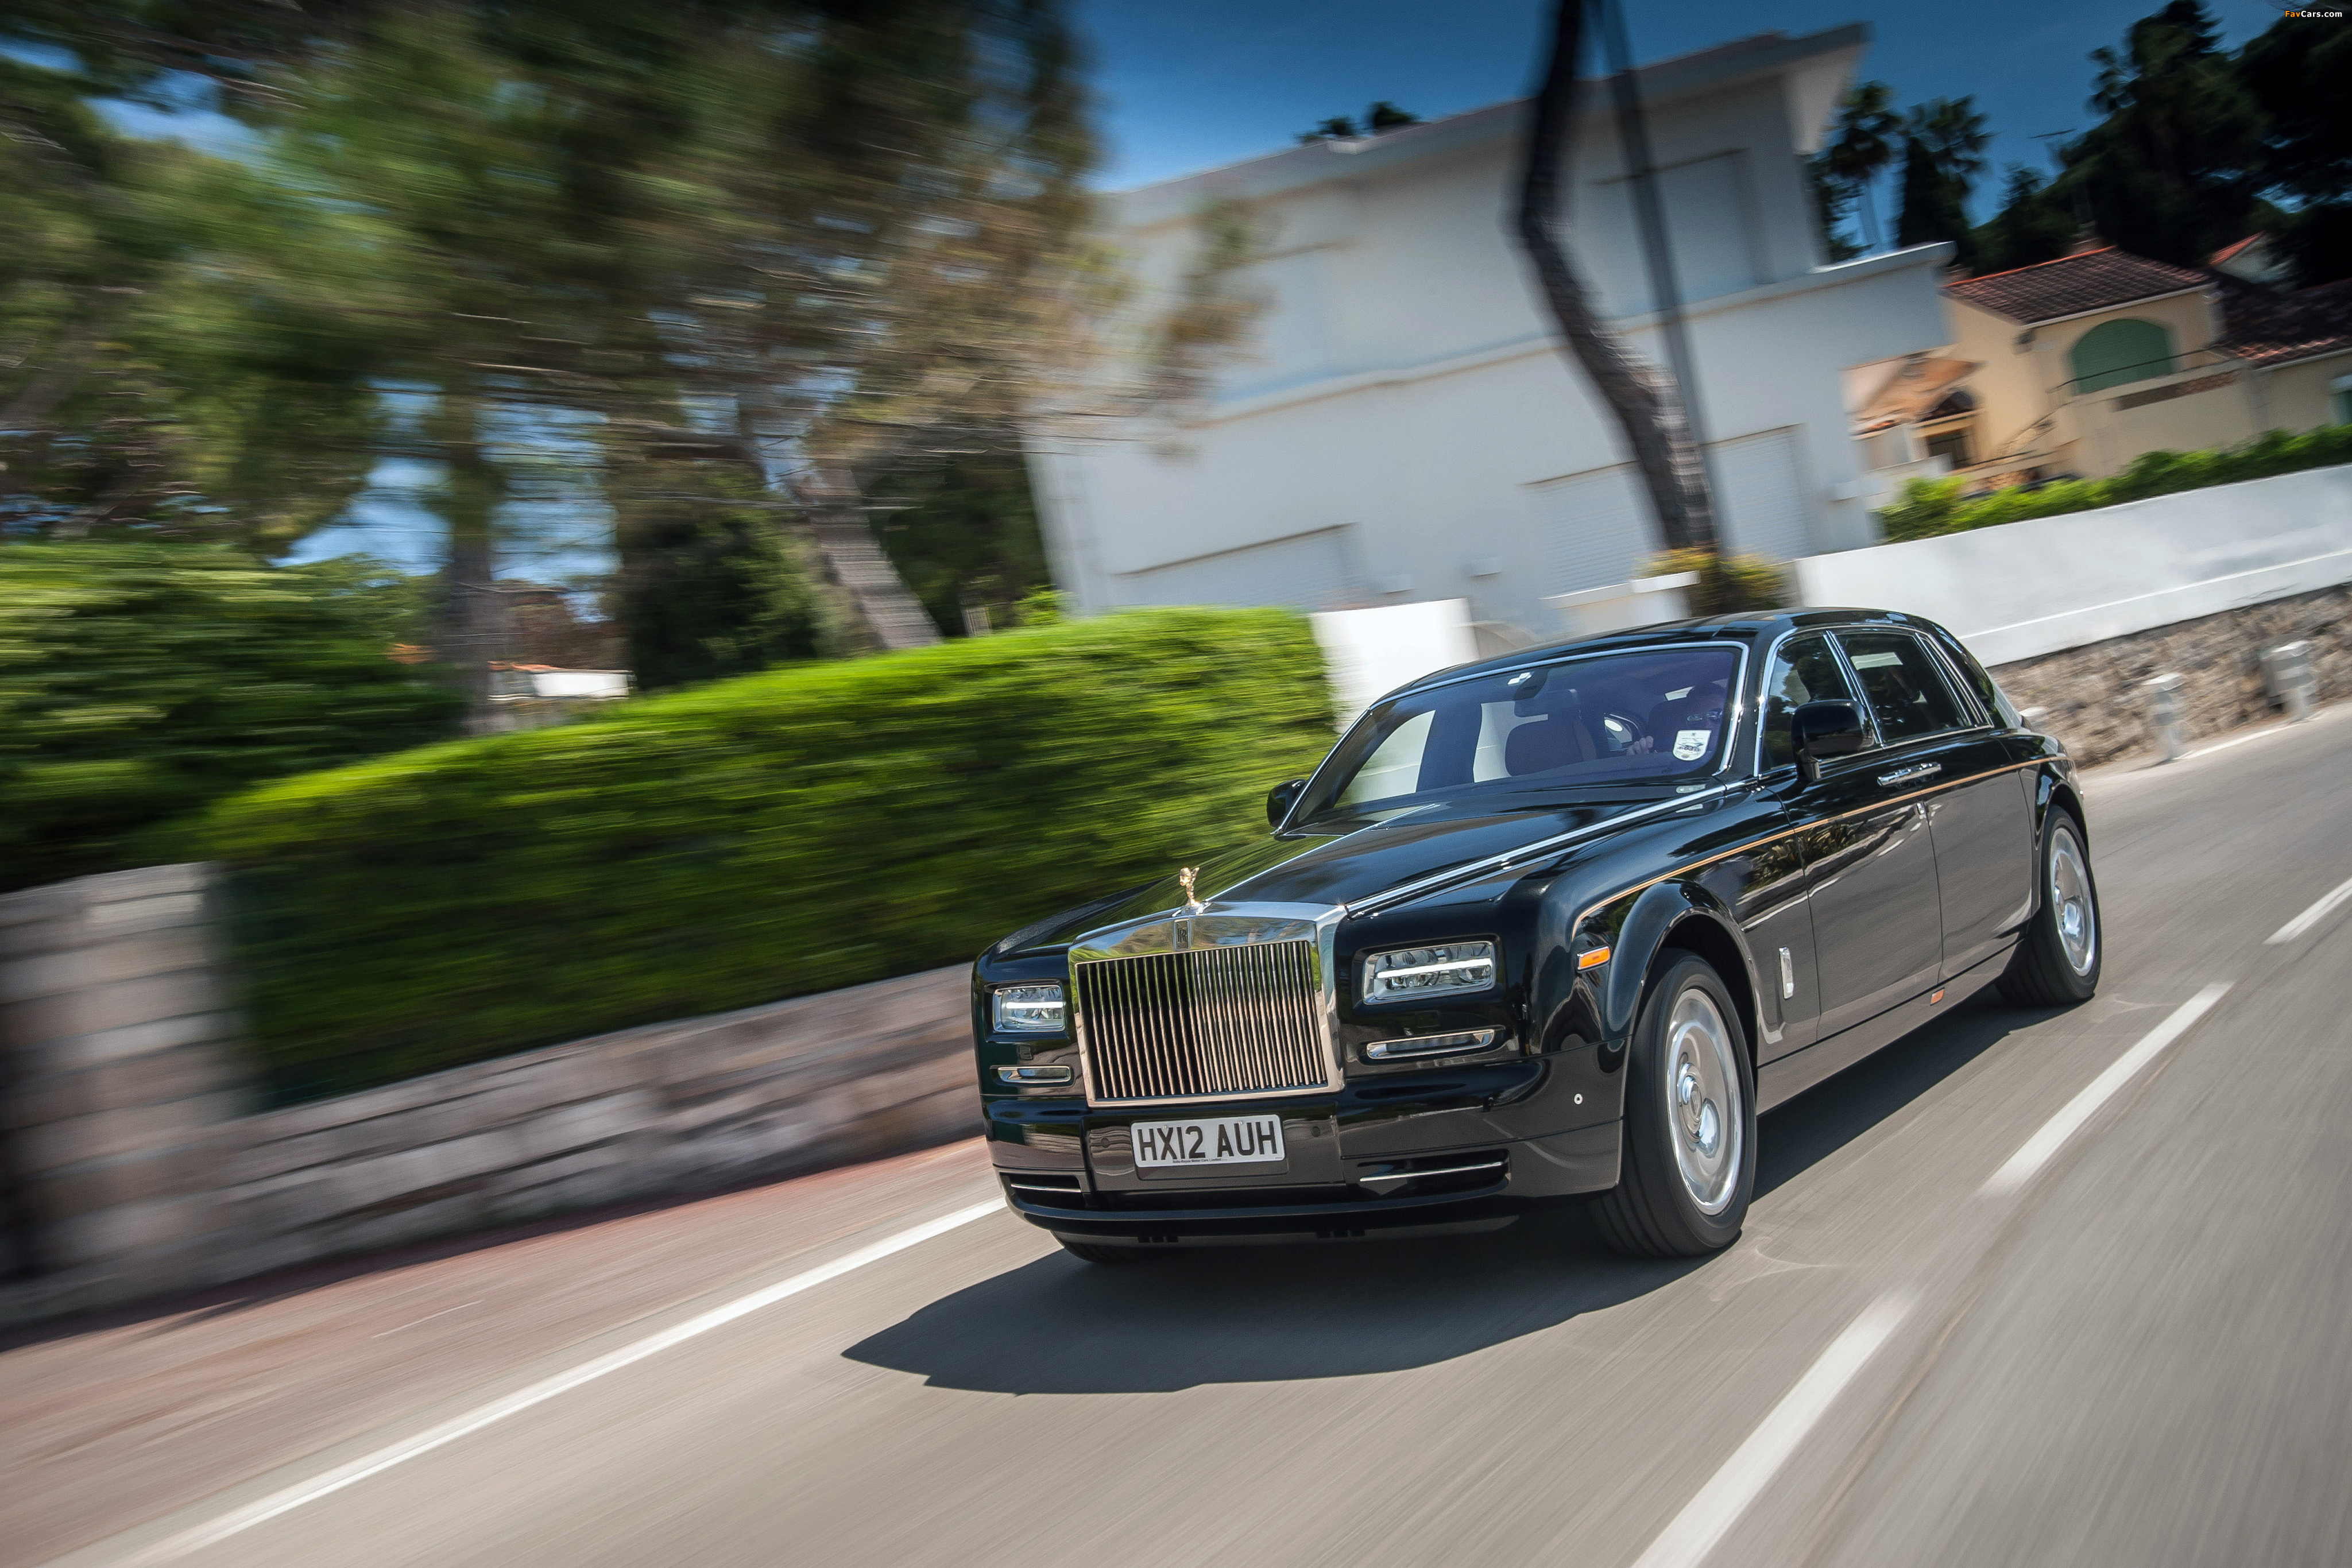 Rolls-Royce Phantom EWB 2012 images (4096 x 2731)